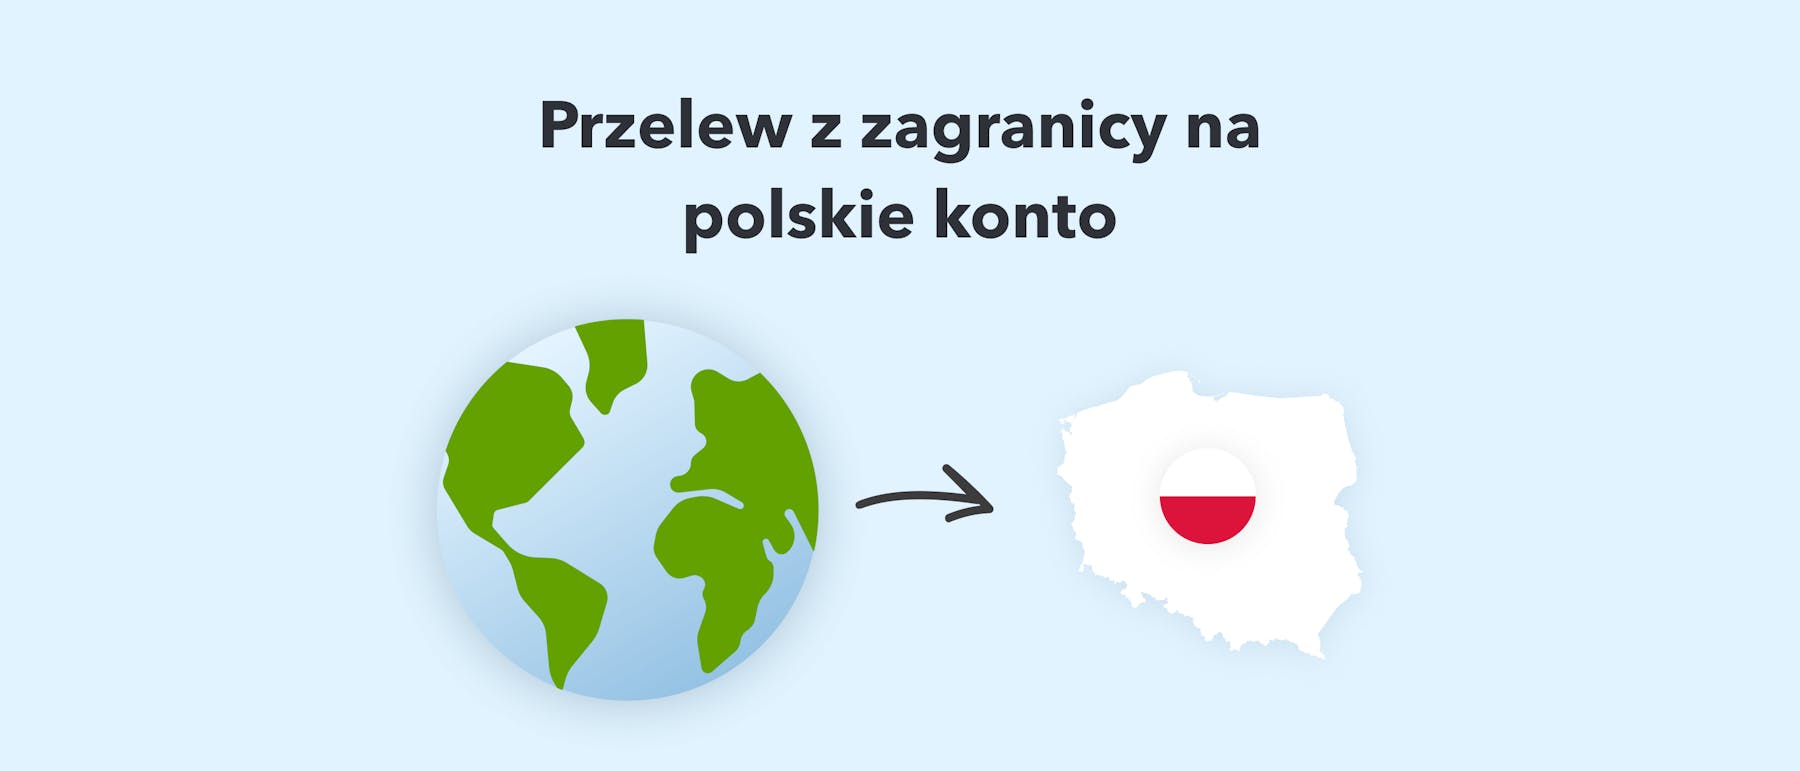 Przelew z zagranicy na polskie konto